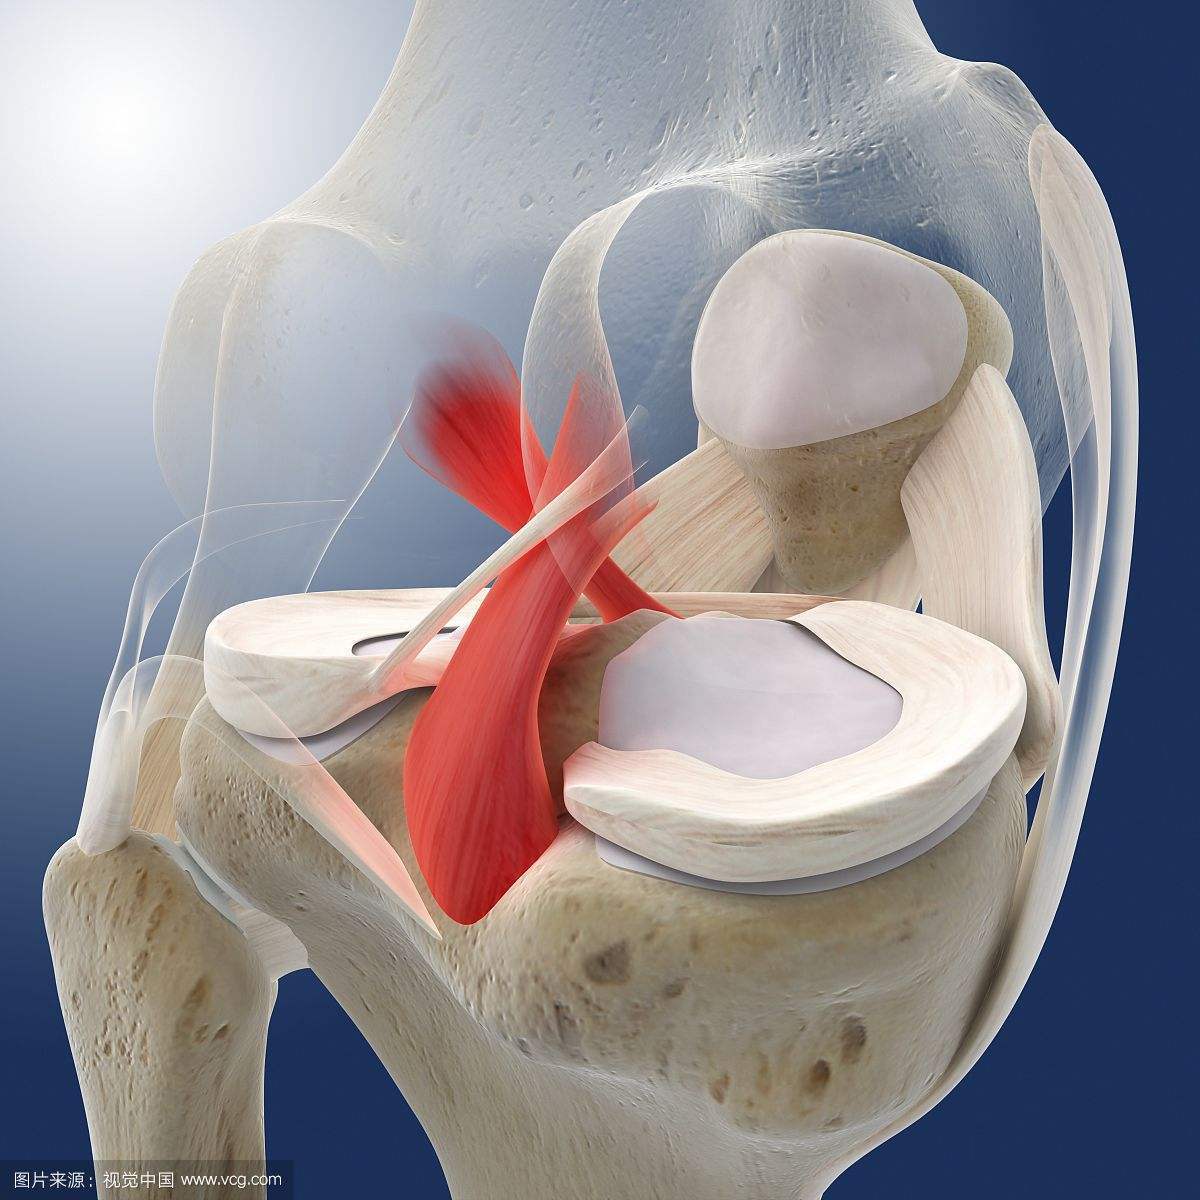 后交叉韧带(pcl)与前交叉韧带(acl)一样,是位于关节内,滑膜囊外的结构